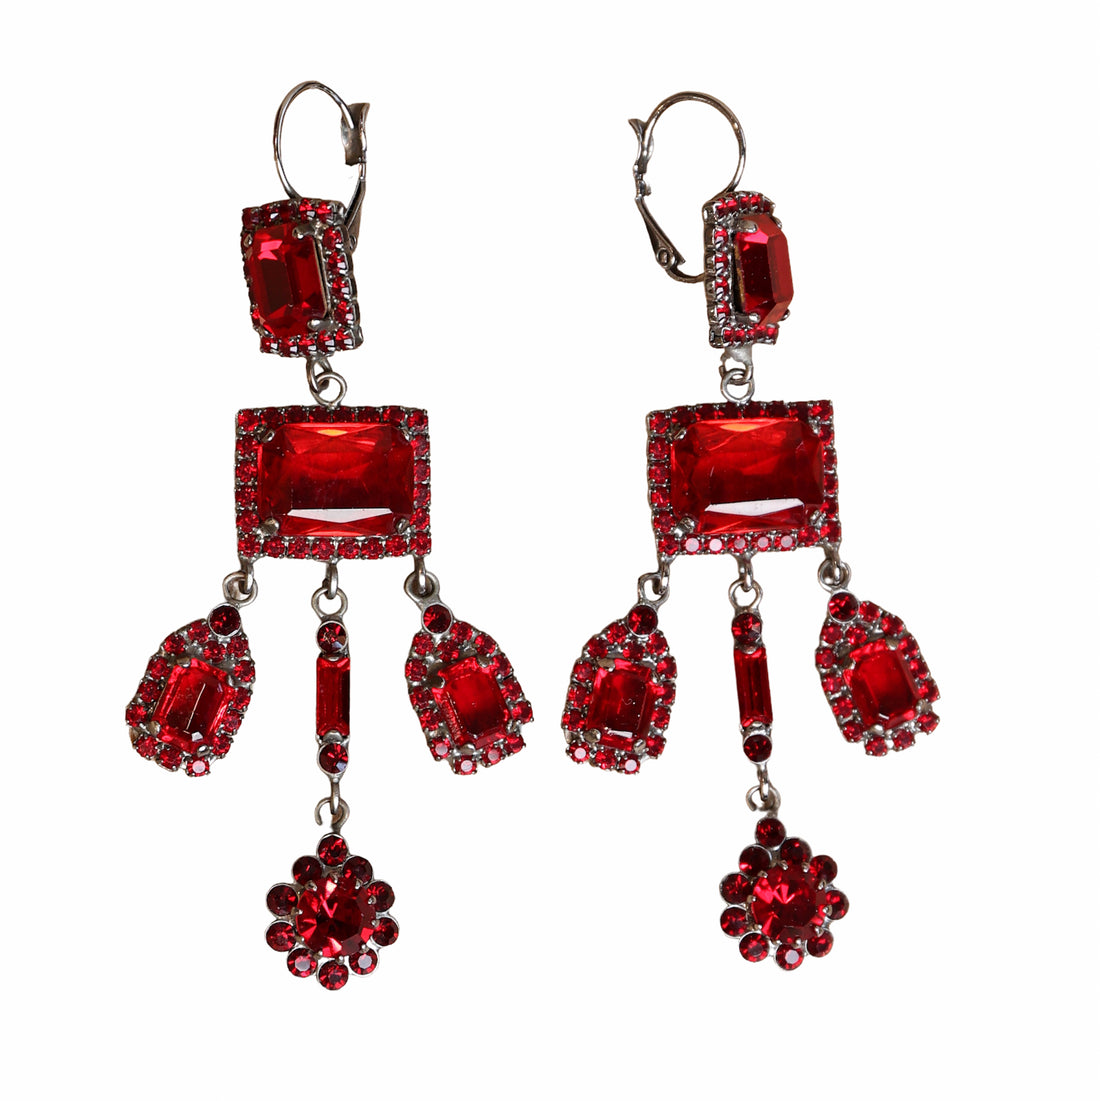 Art Deco style chandelier earrings